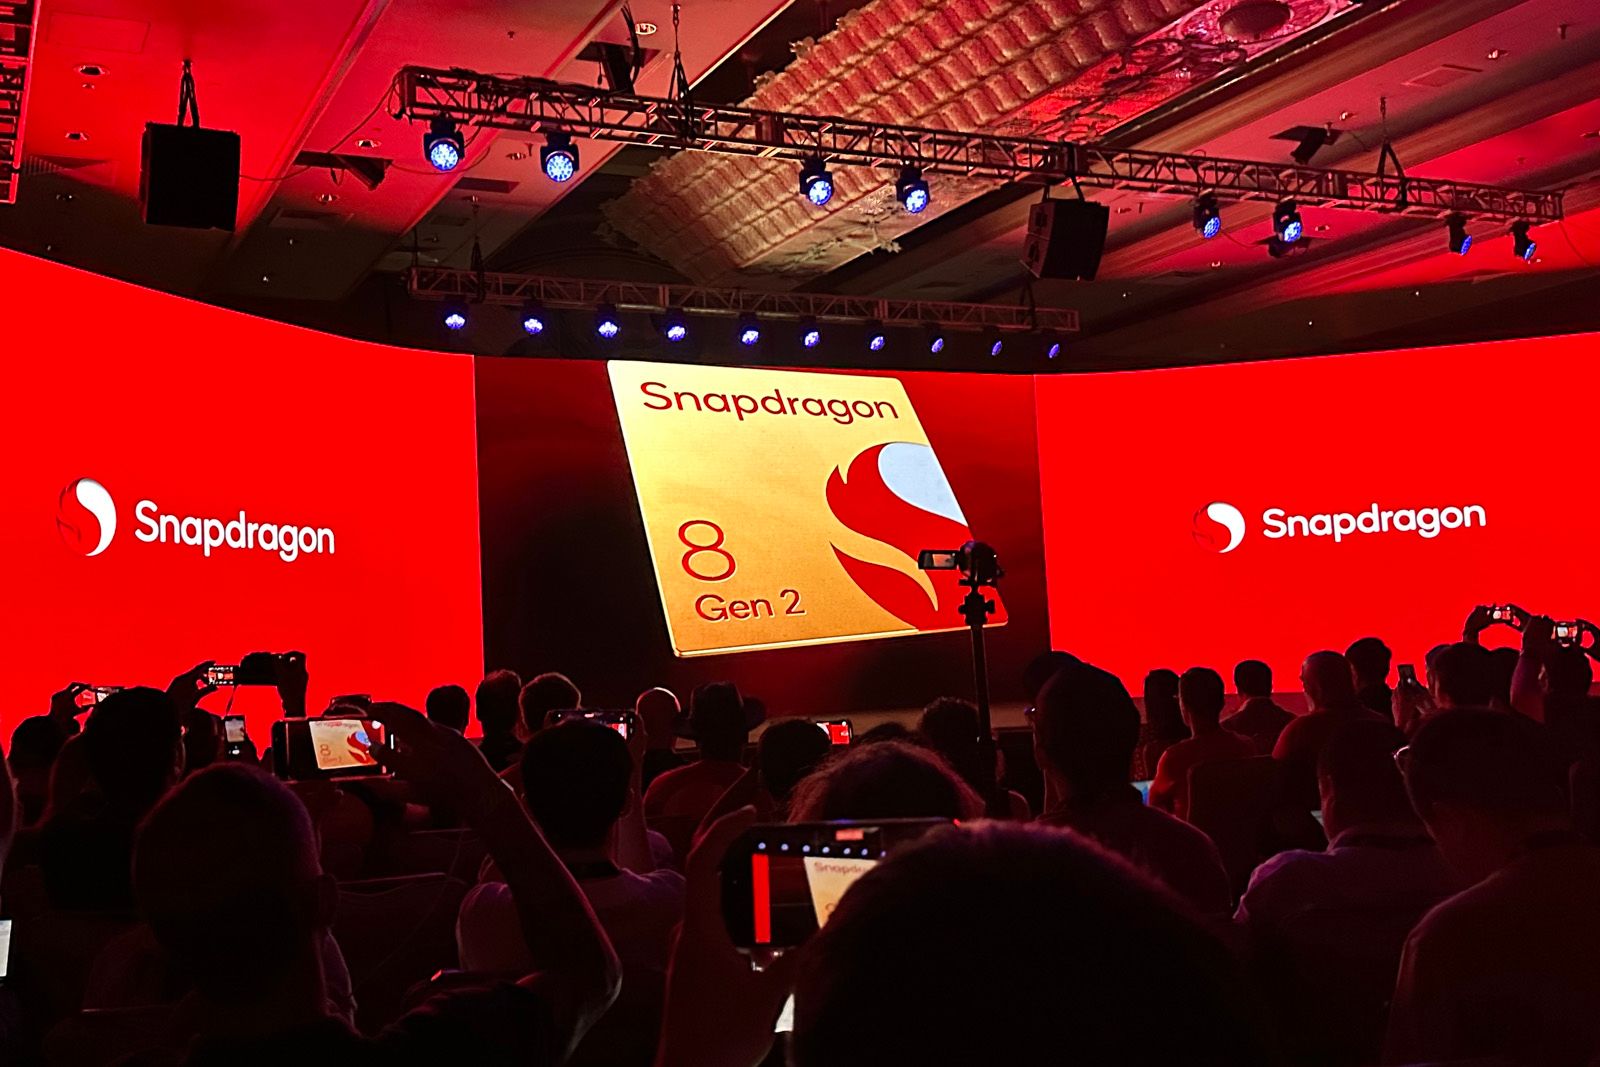 Qualcomm Snapdragon 8 Gen 2: Detailing the 2023 flagship mobile platform